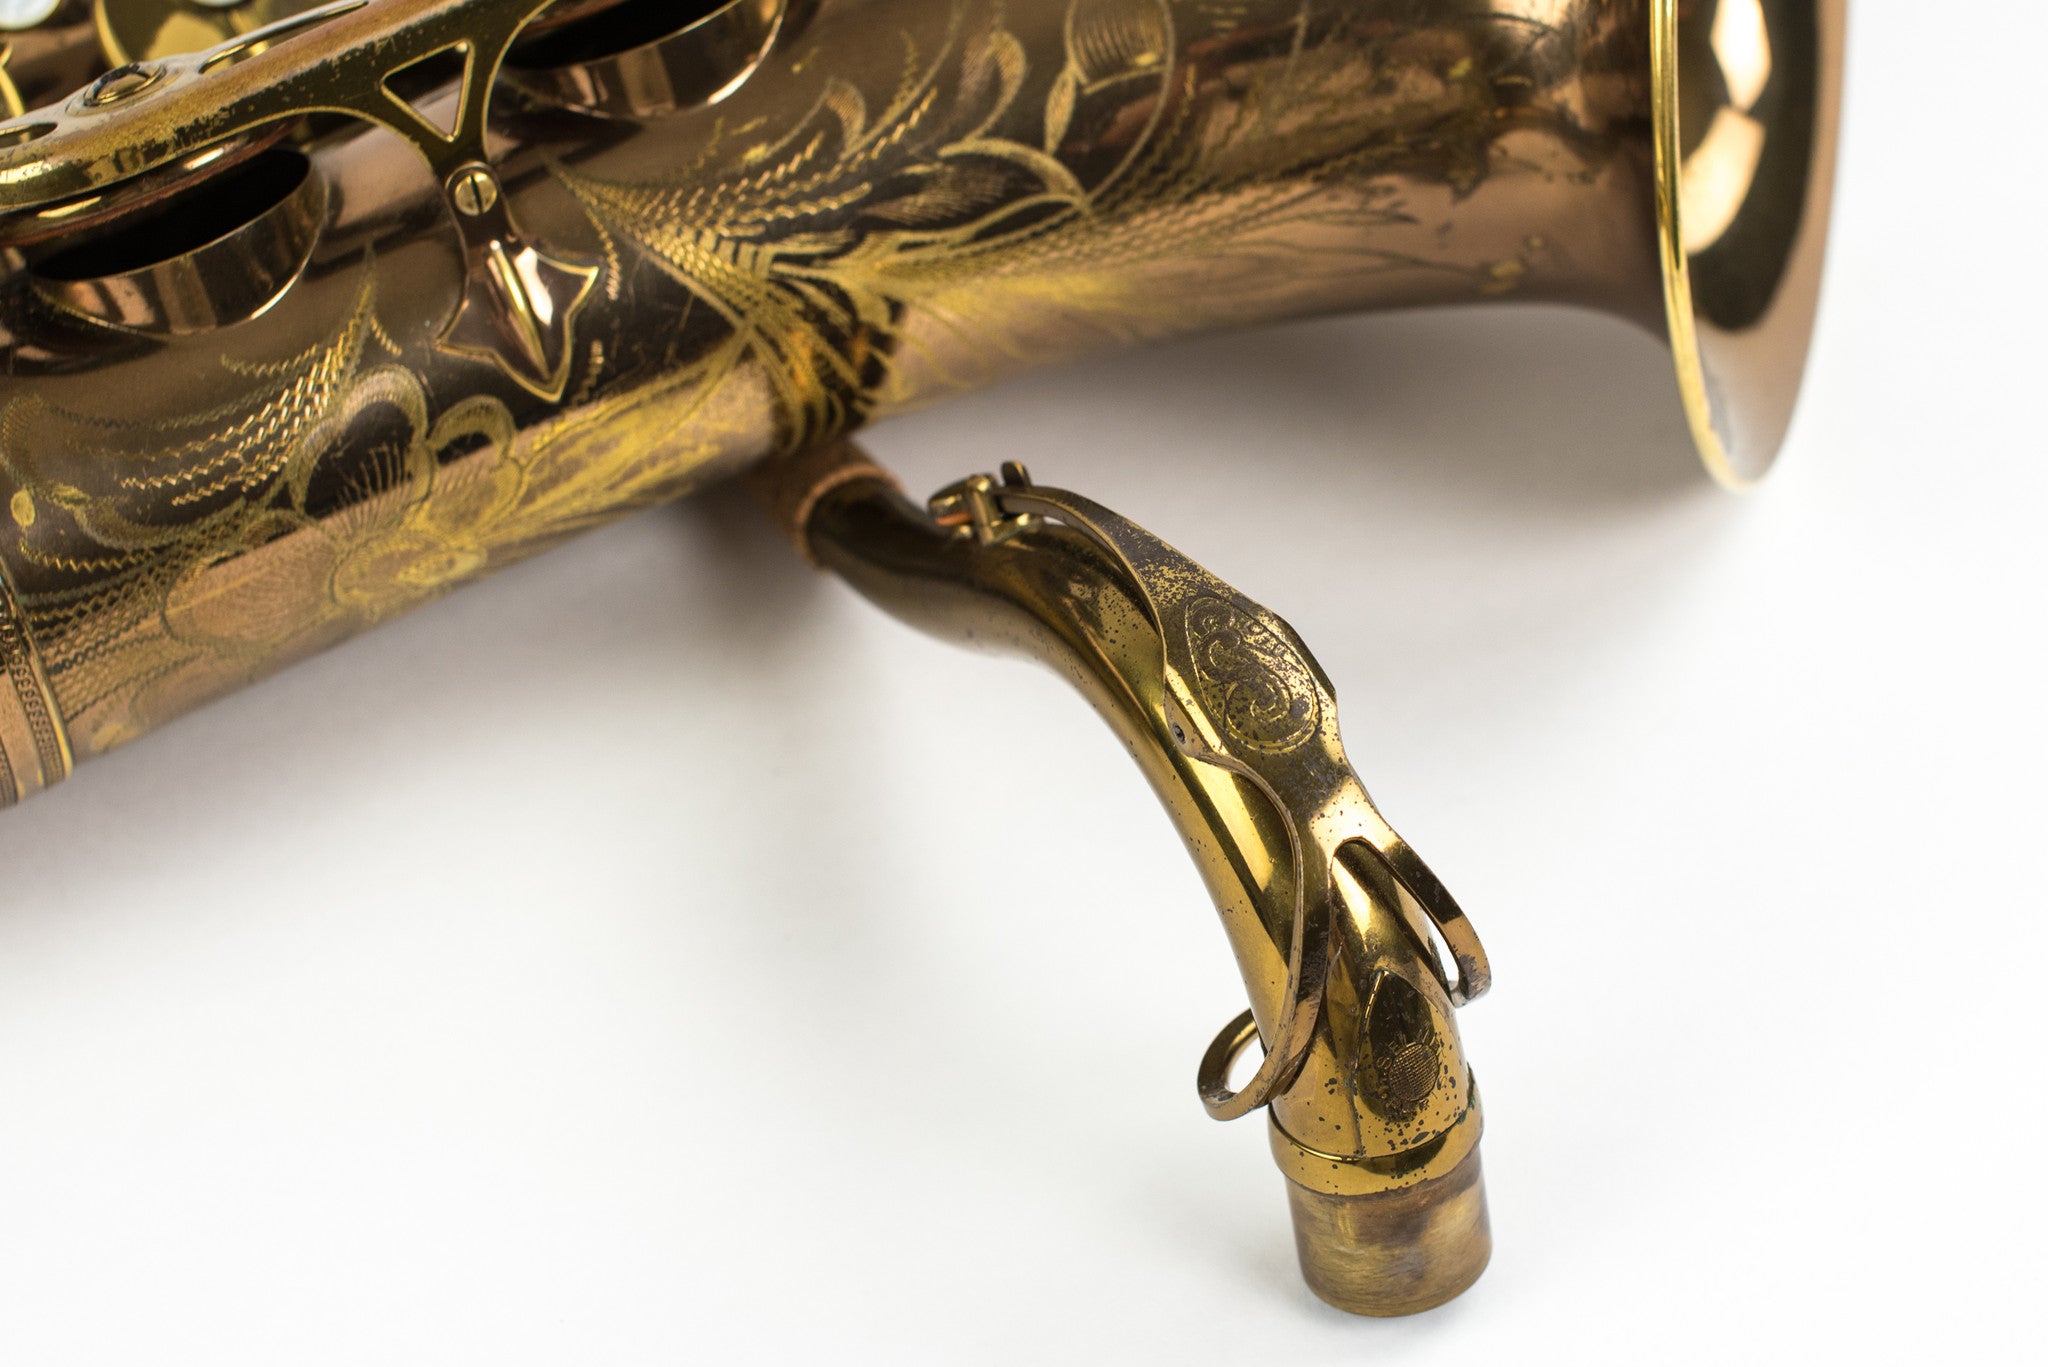 1954 Selmer Mark VI Tenor Saxophone, 95% Original Lacquer